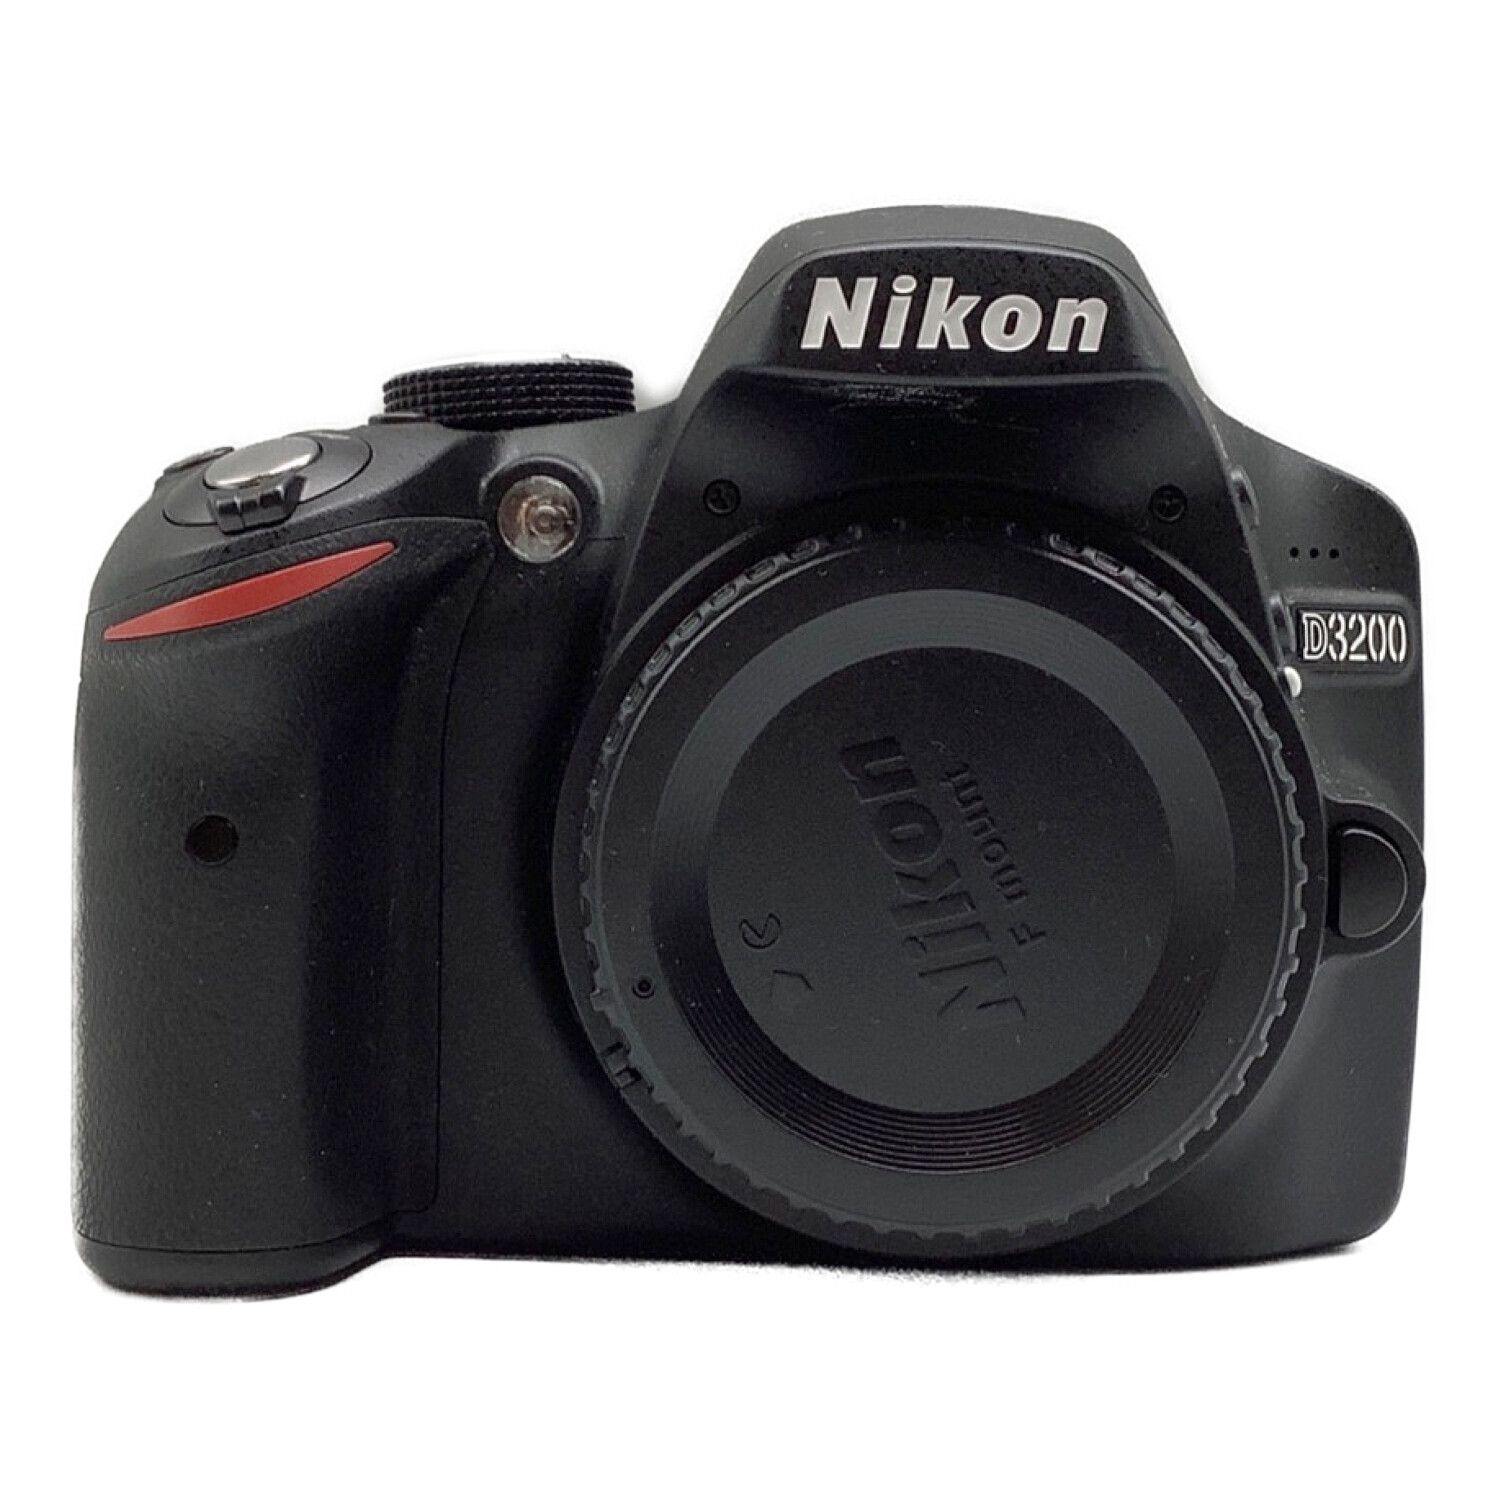 Nikon (ニコン) デジタル一眼レフカメラ D3200 ダブルズームキット